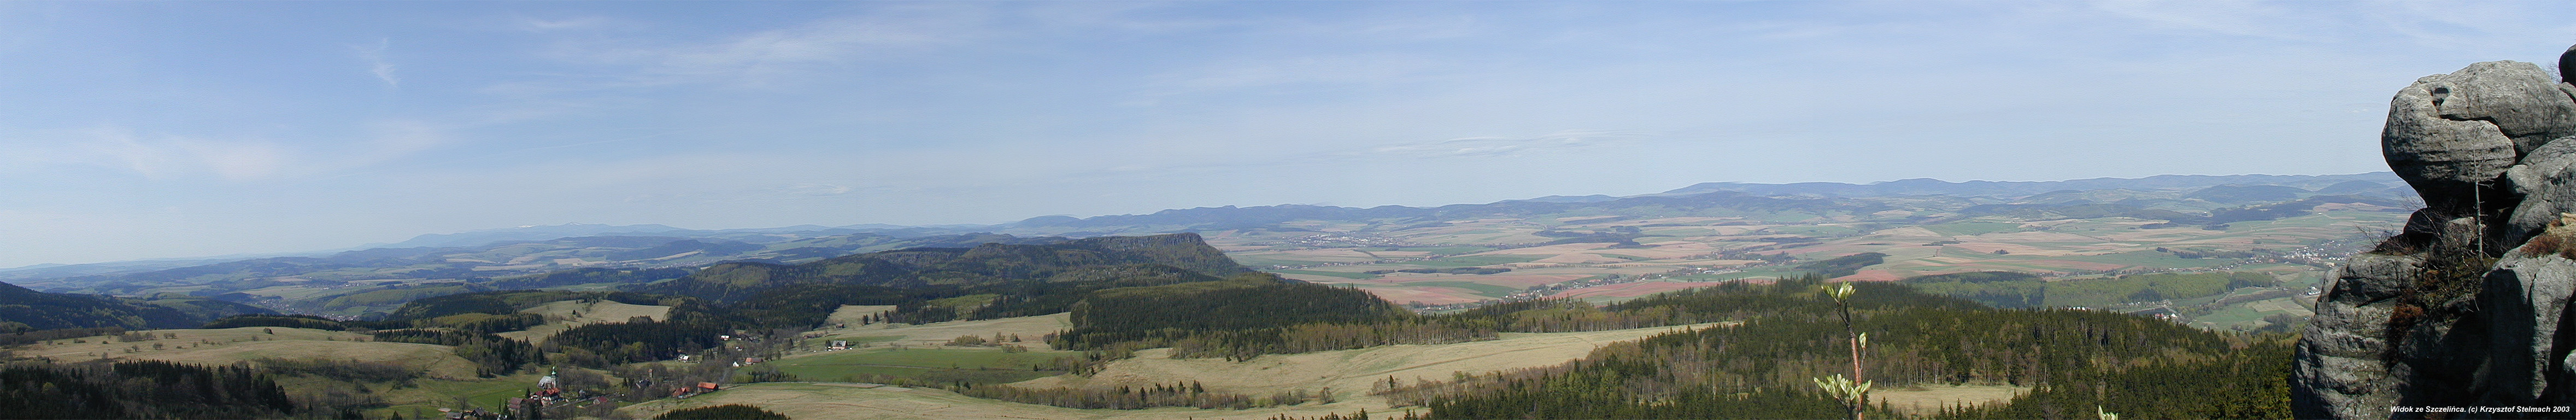 Widok ze Szczelińca - panorama